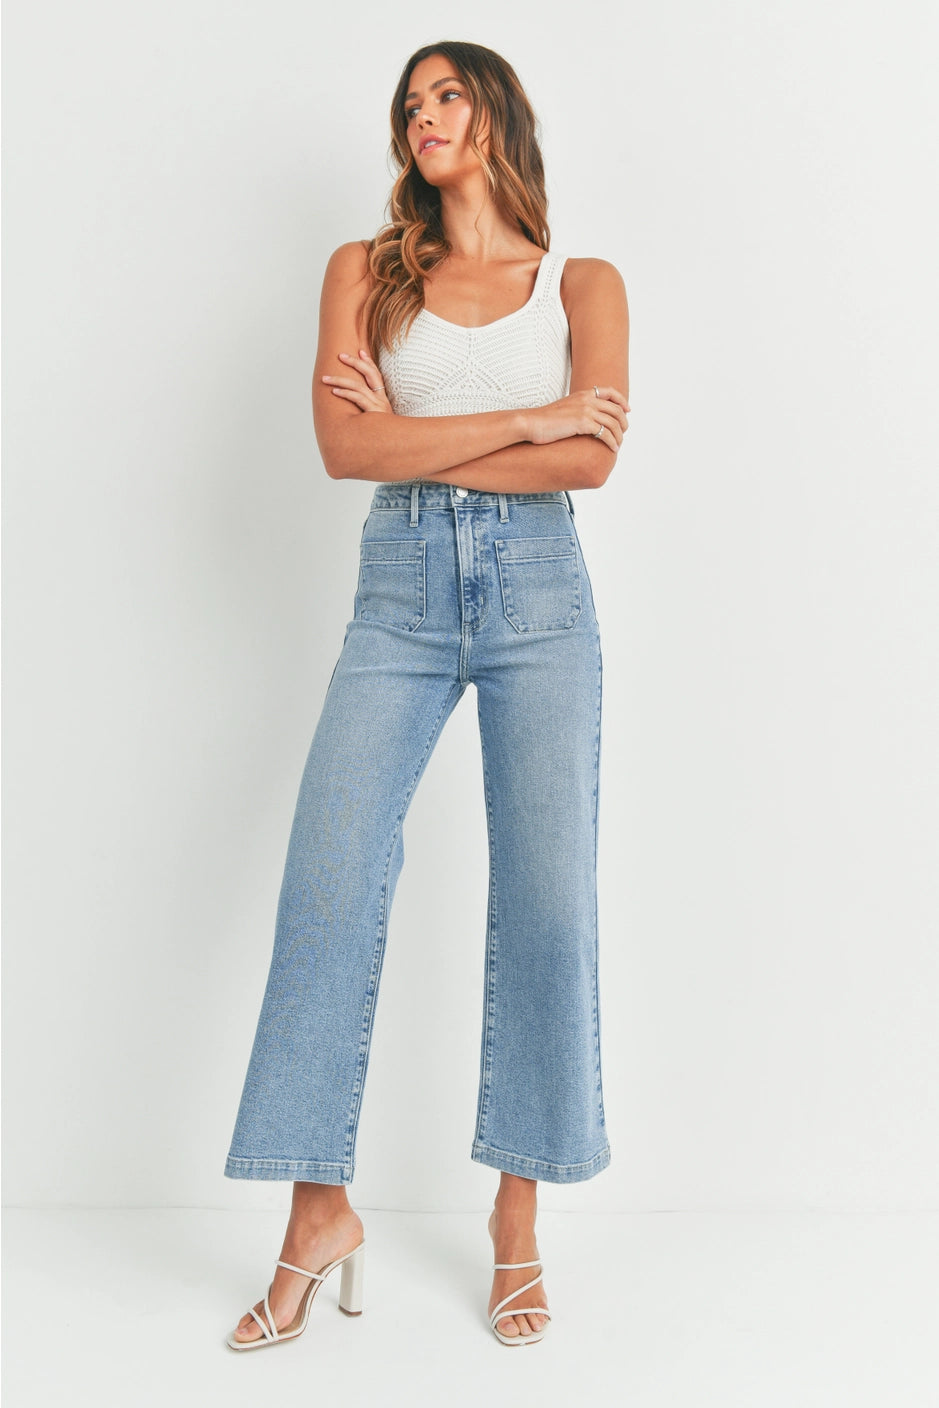 Marshfield Jeans